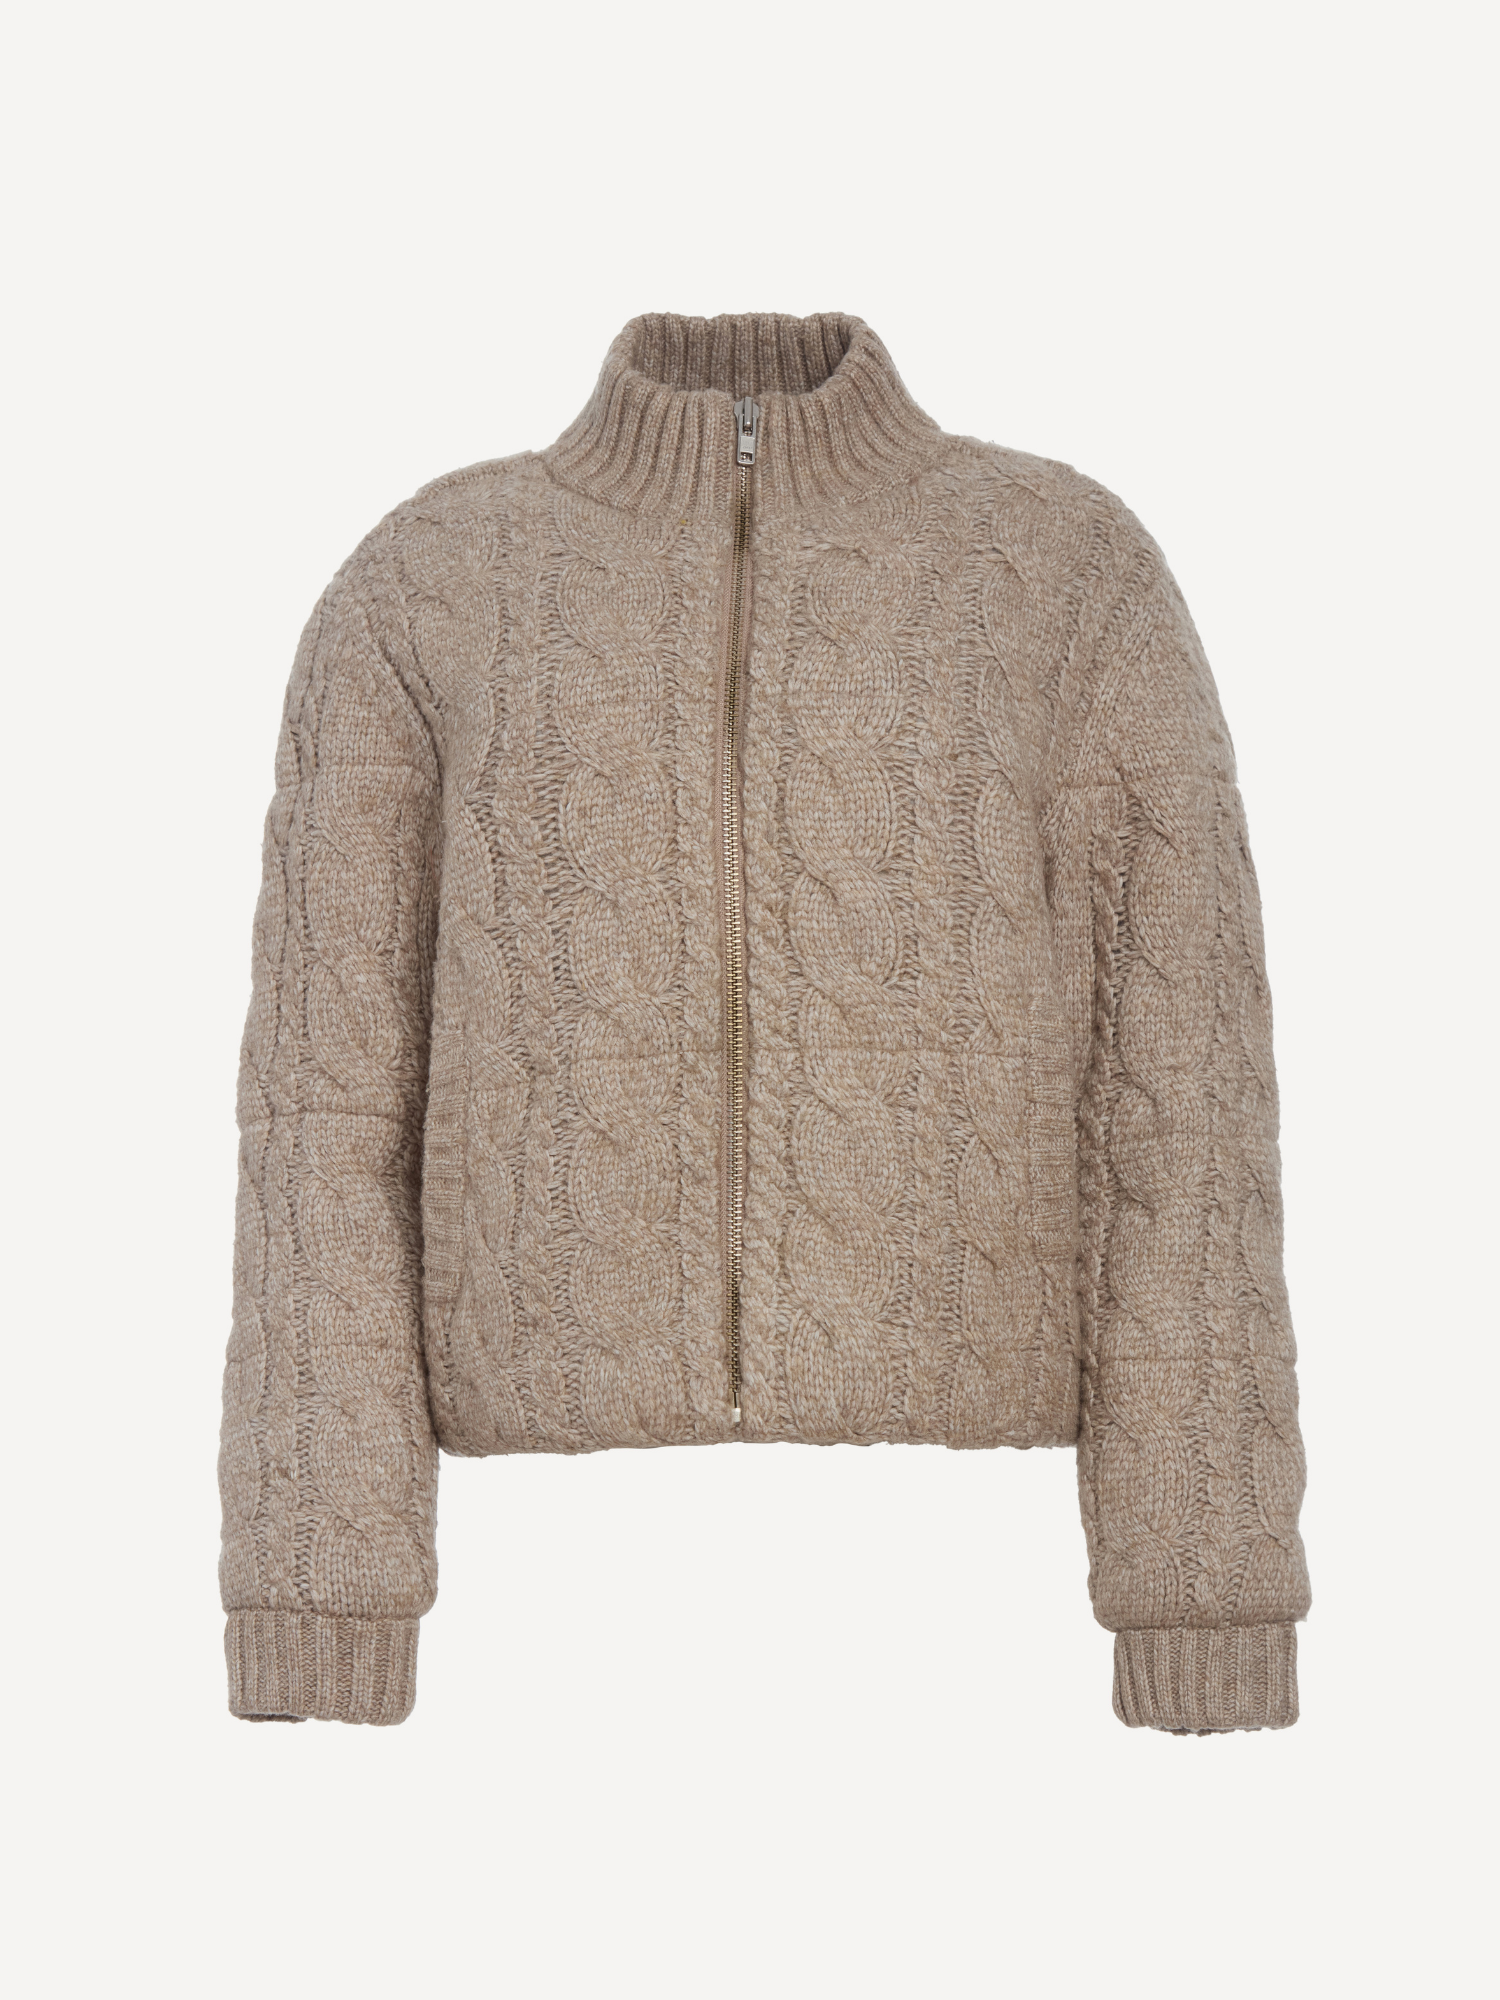 Aspen Sweater Jacket